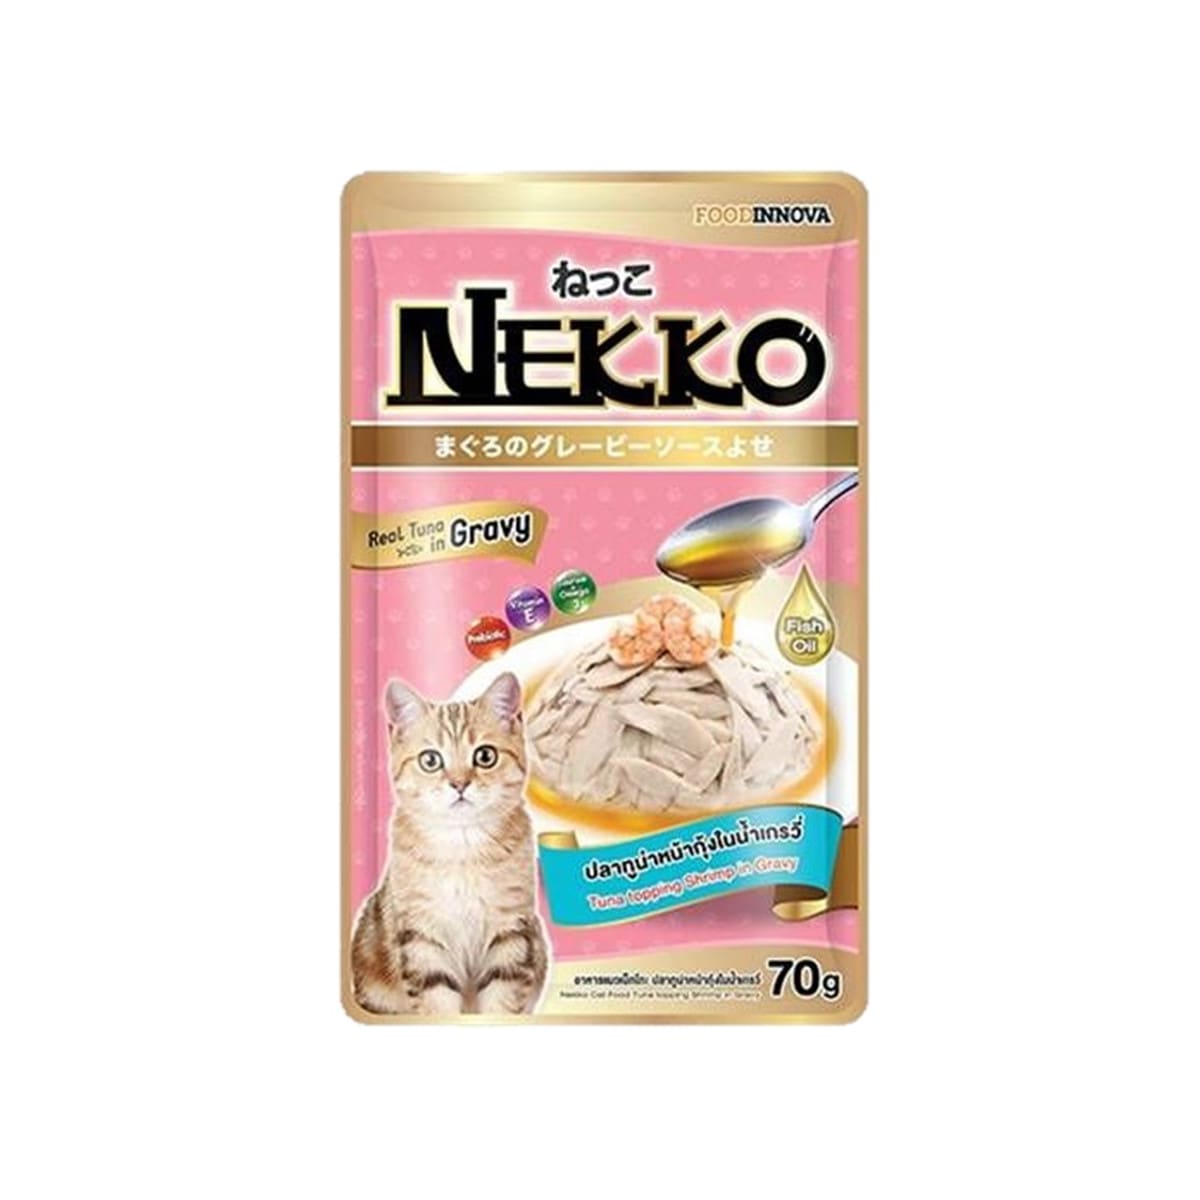 Nekko เน็กโกะ รสปลาทูน่าหน้ากุ้งในน้ำเกรวี่ สำหรับแมว 70 g